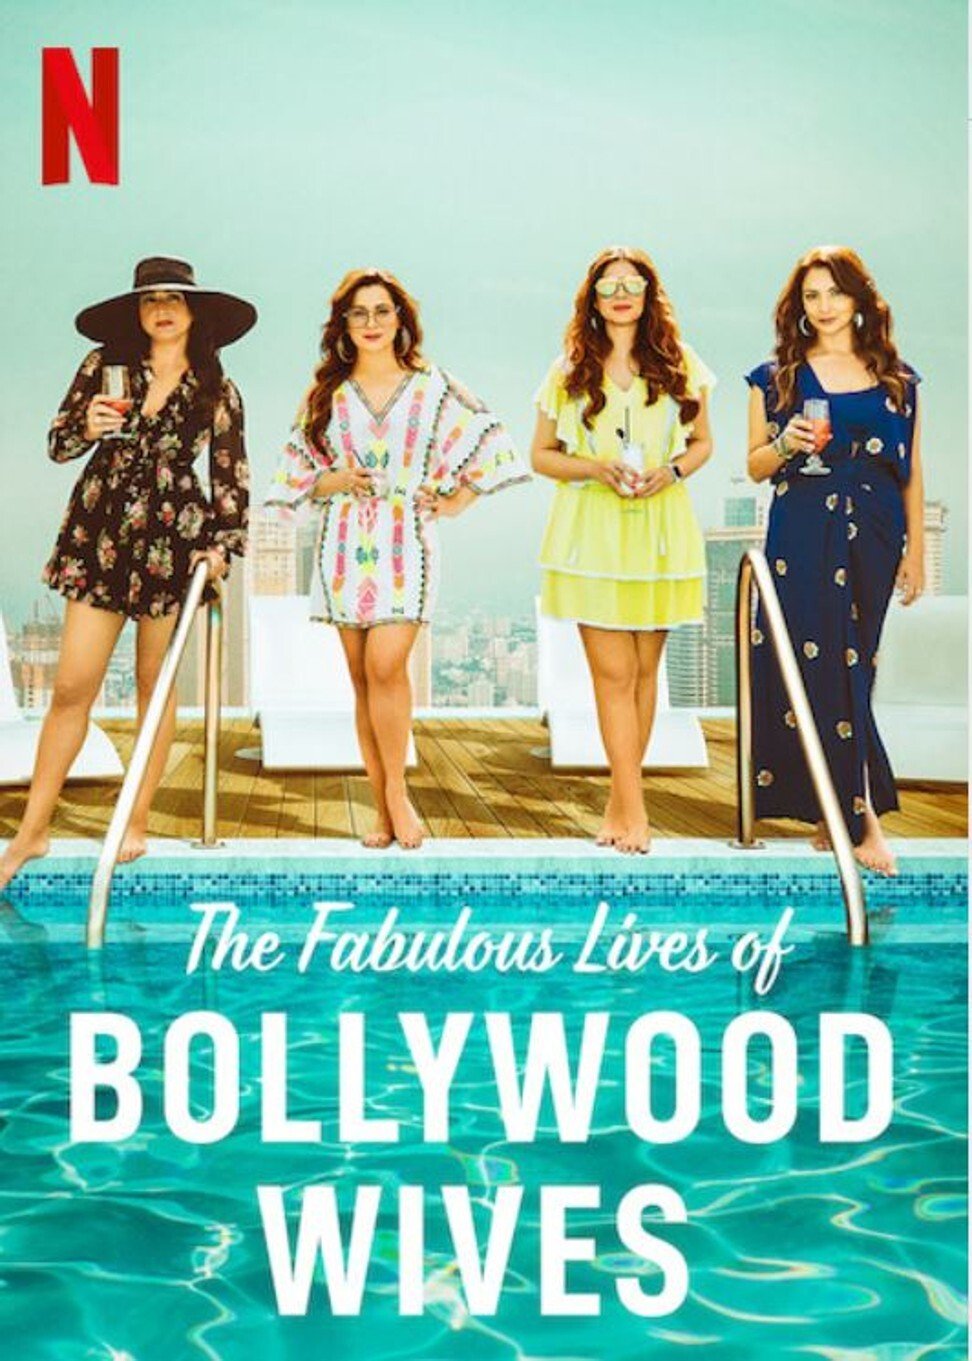 ดูหนังออนไลน์ Fabulous Lives of Bollywood Wives Season 1 Ep06 แฟบูลูส ไลฟ์ ออฟ บอลลีวู๊ด ไวส์ท ปี1 ตอนที่6